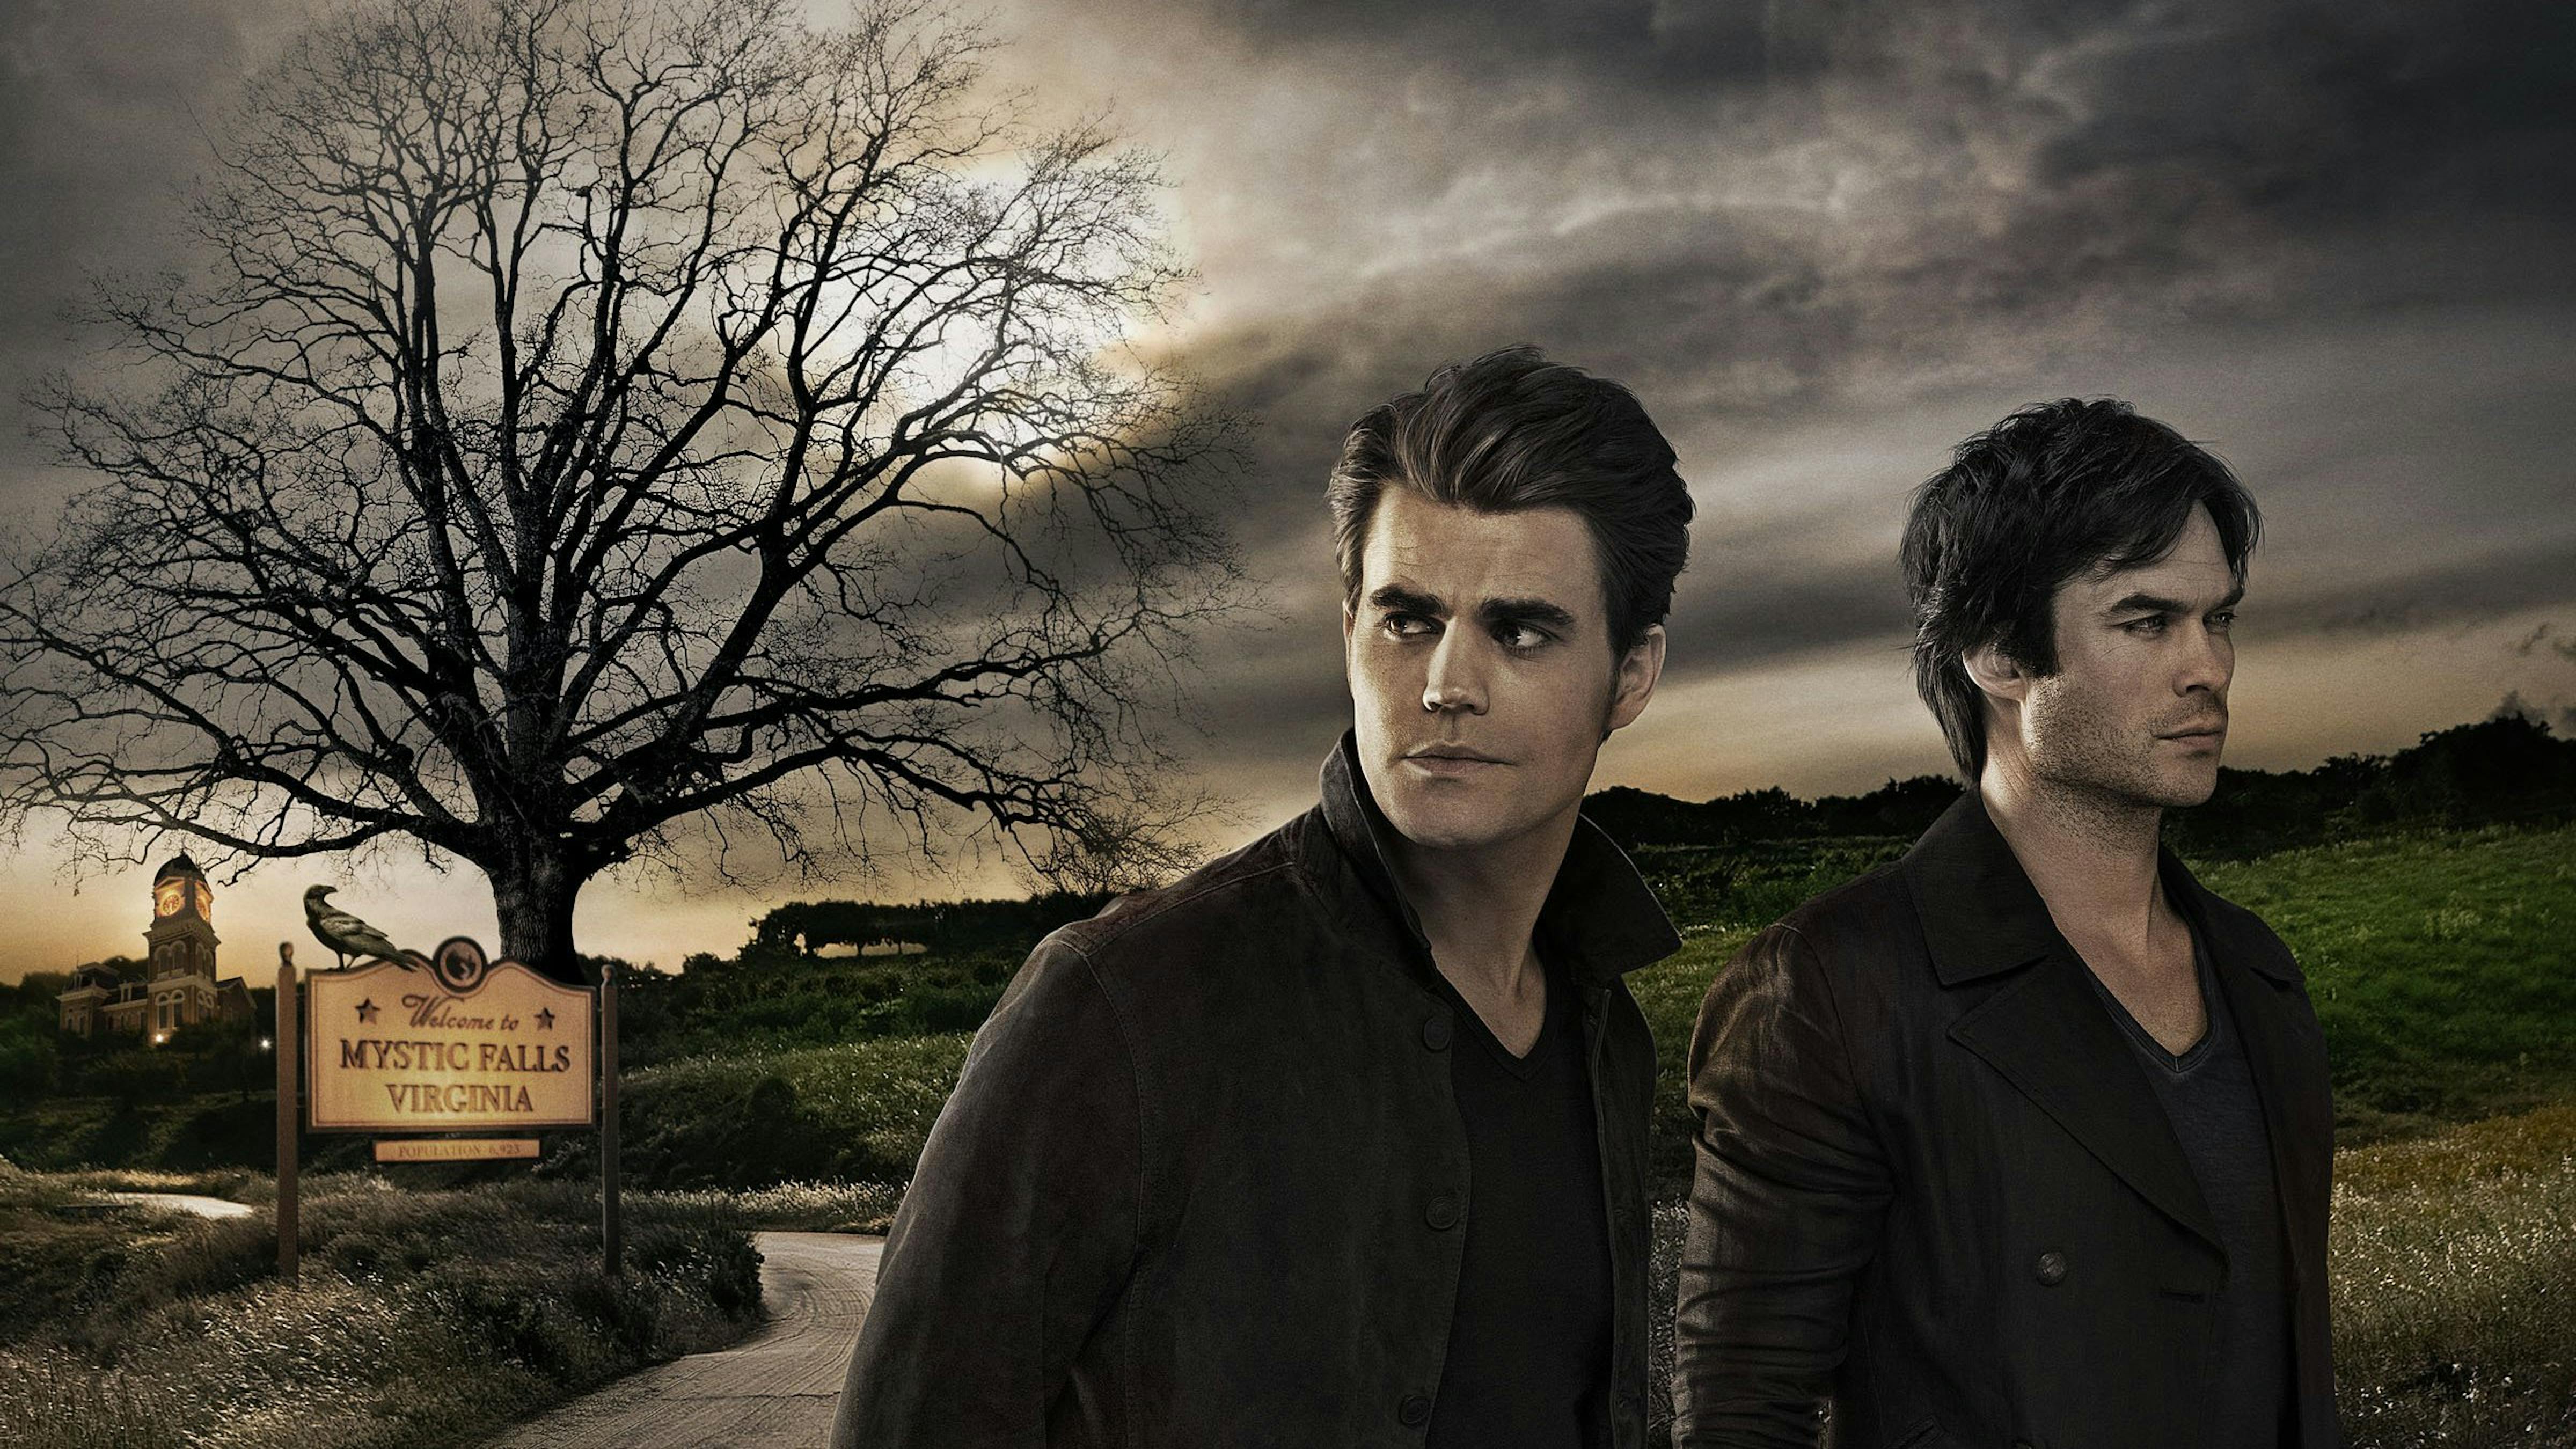 Músicas de Séries: Músicas de The Vampire Diaries 1ª Temporada